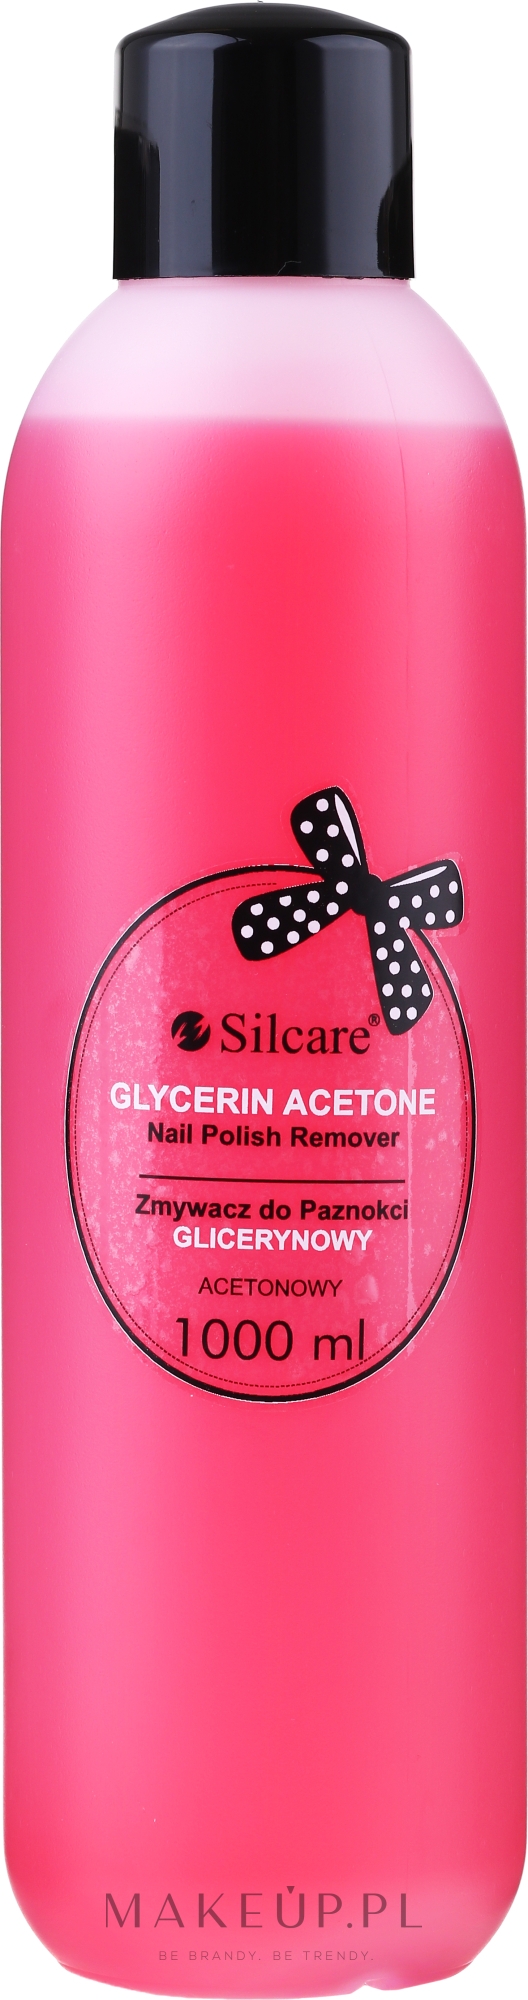 Glicerynowy zmywacz do paznokci z acetonem - Silcare Glycerin Acetone Nail Polish Remover — фото 1000 ml